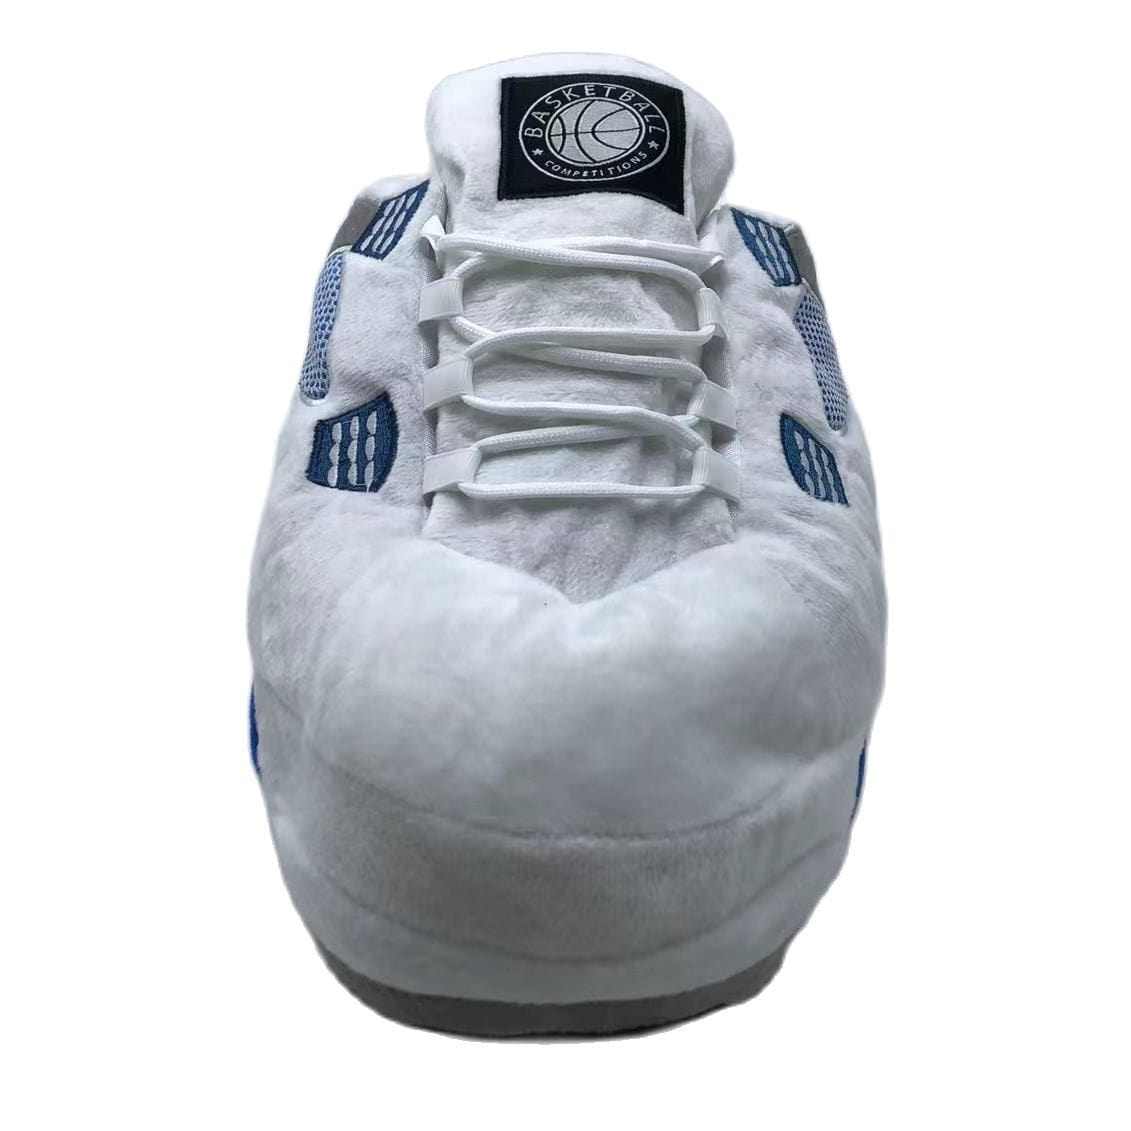 Slip Kickz  Slippers One Size Fits All ( UK 3 - 10.5 ) White and Blue Jordan 4 Novelty Sneaker Slippers